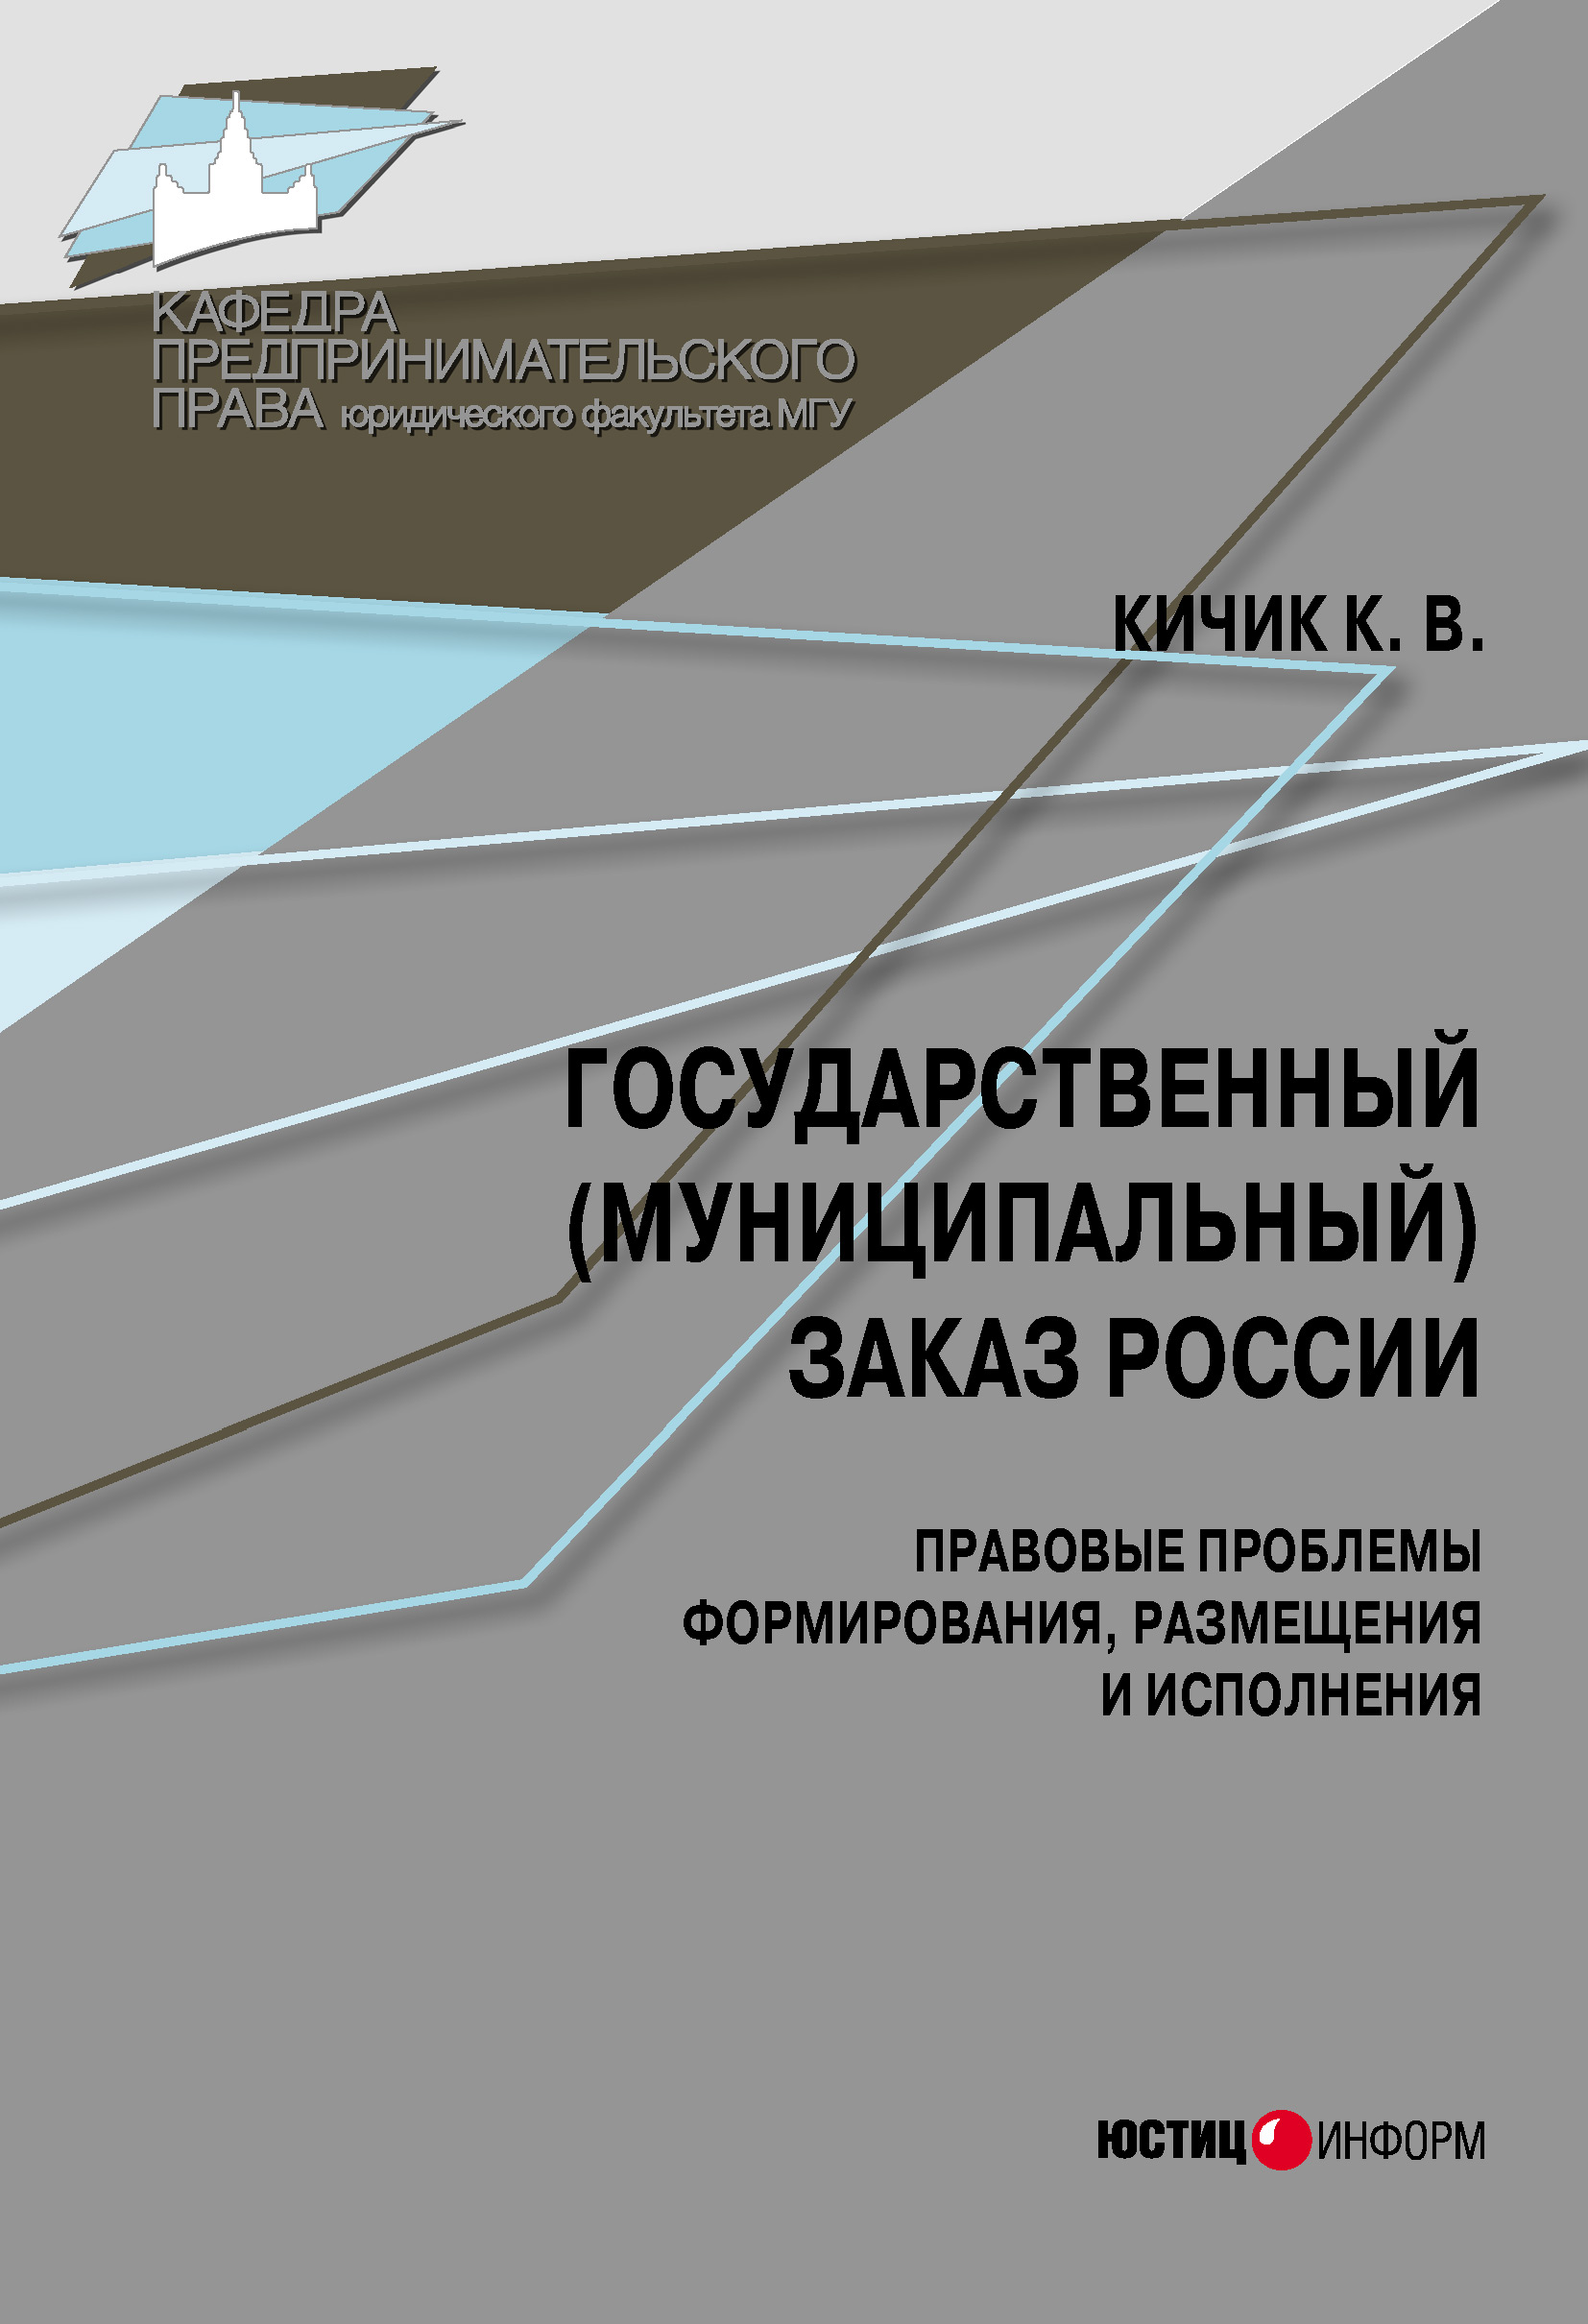 Государственный (муниципальный) заказ России: правовые проблемы формирования, размещения и исполнения